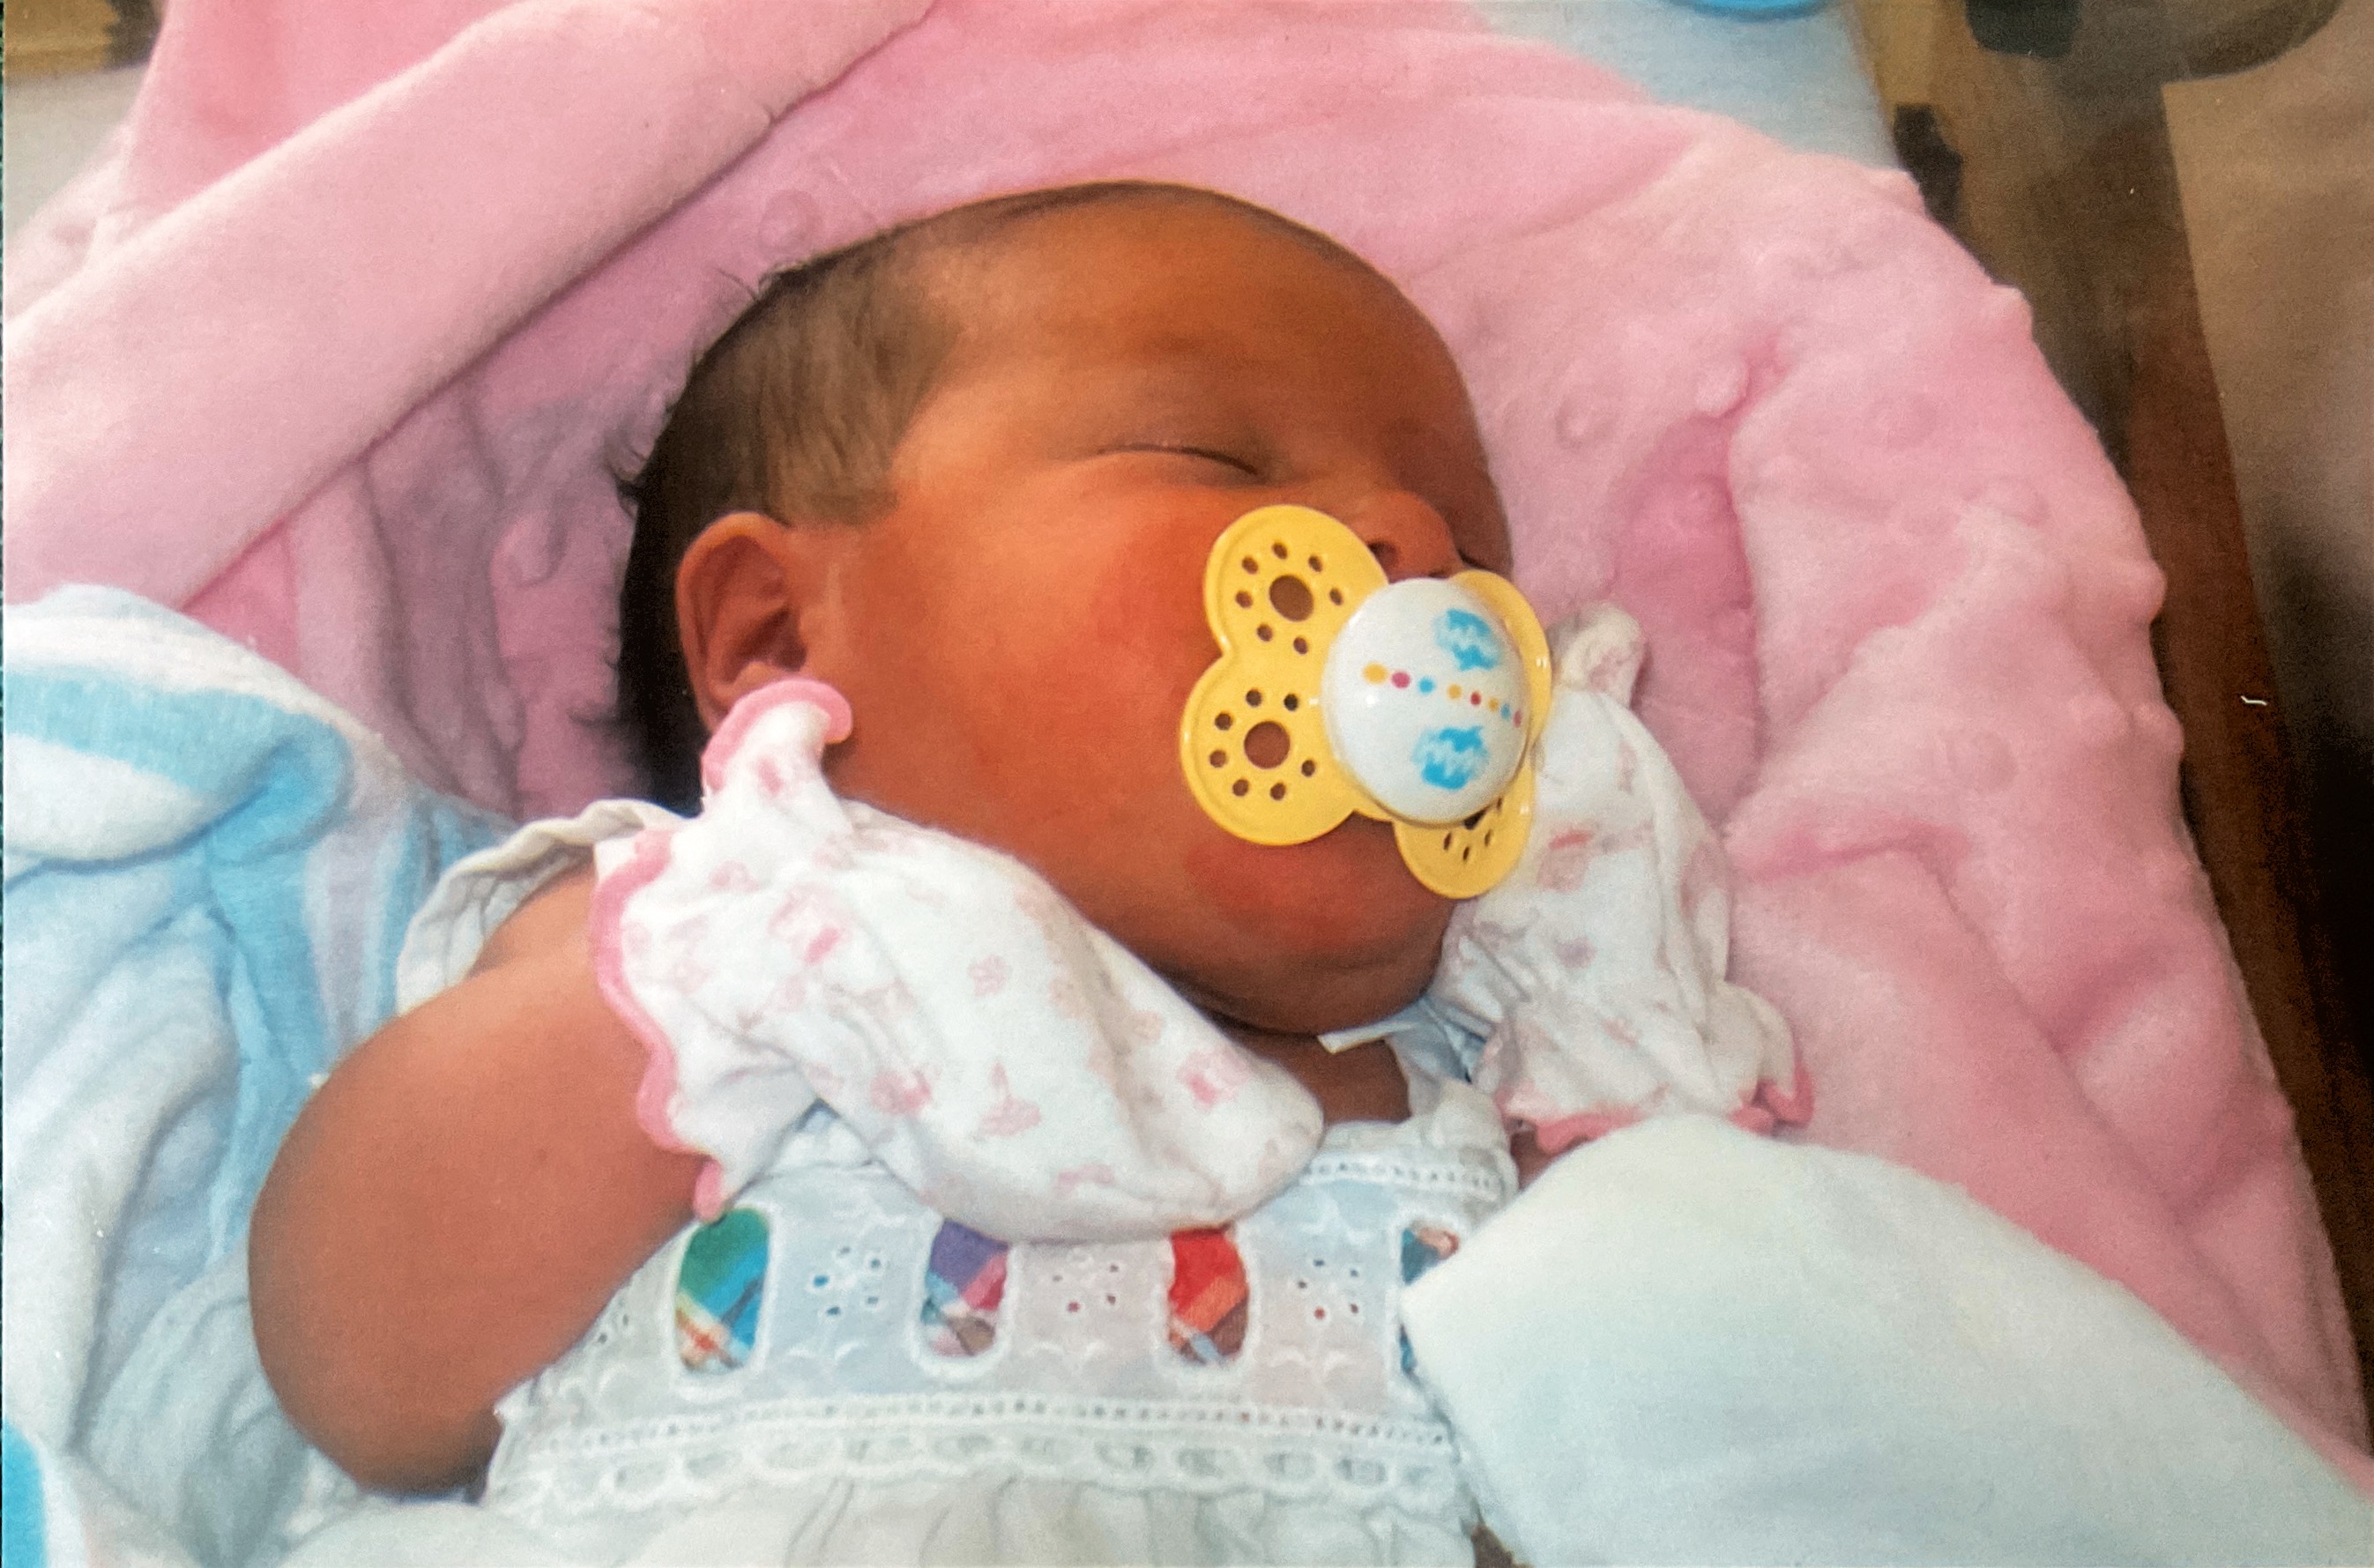 Kadence’s baby photo in hospital born 08/11/2007